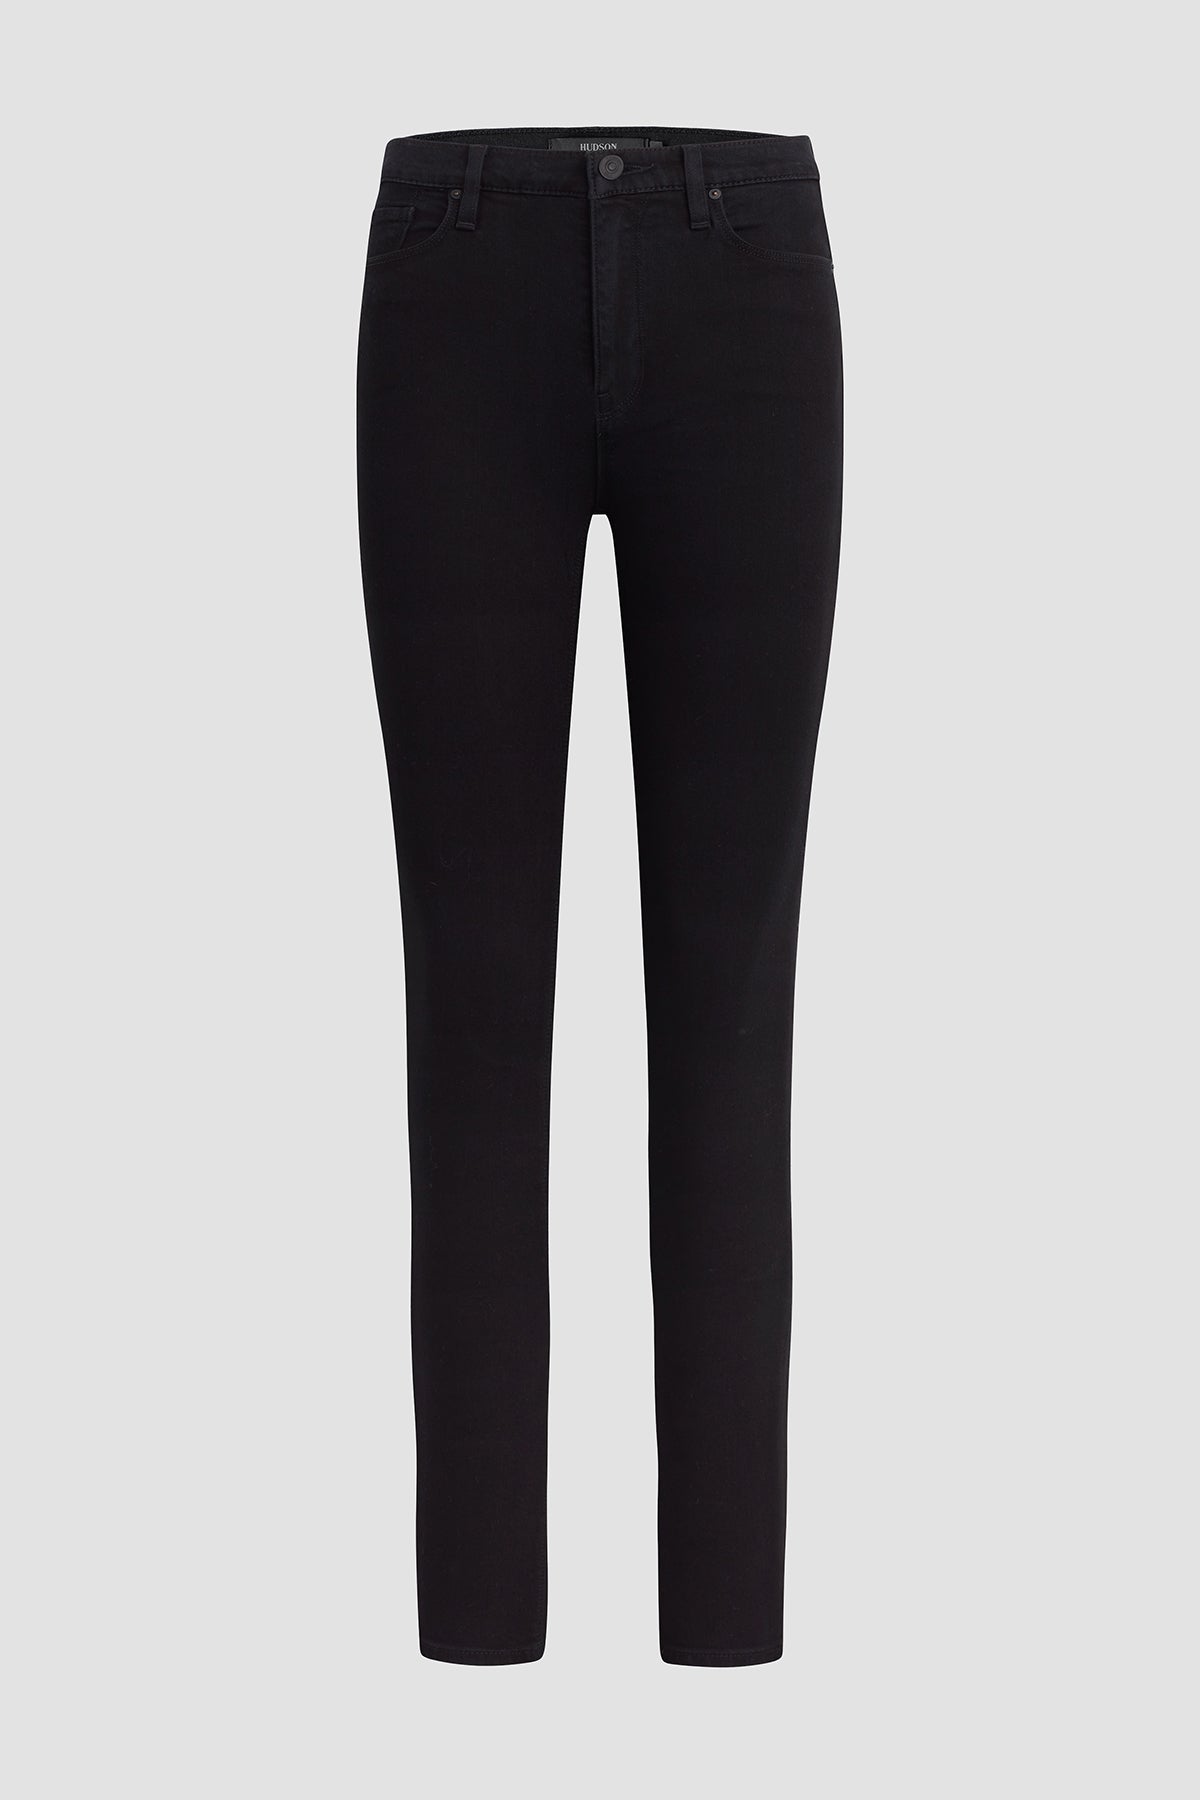 Buy Istyle Can Solid Black High Waist Split Hem Flare Leg Slim Pants Trouser  For Women's & Girls | Trousers For Women | Pants For Women | Formal Pants  For Women |